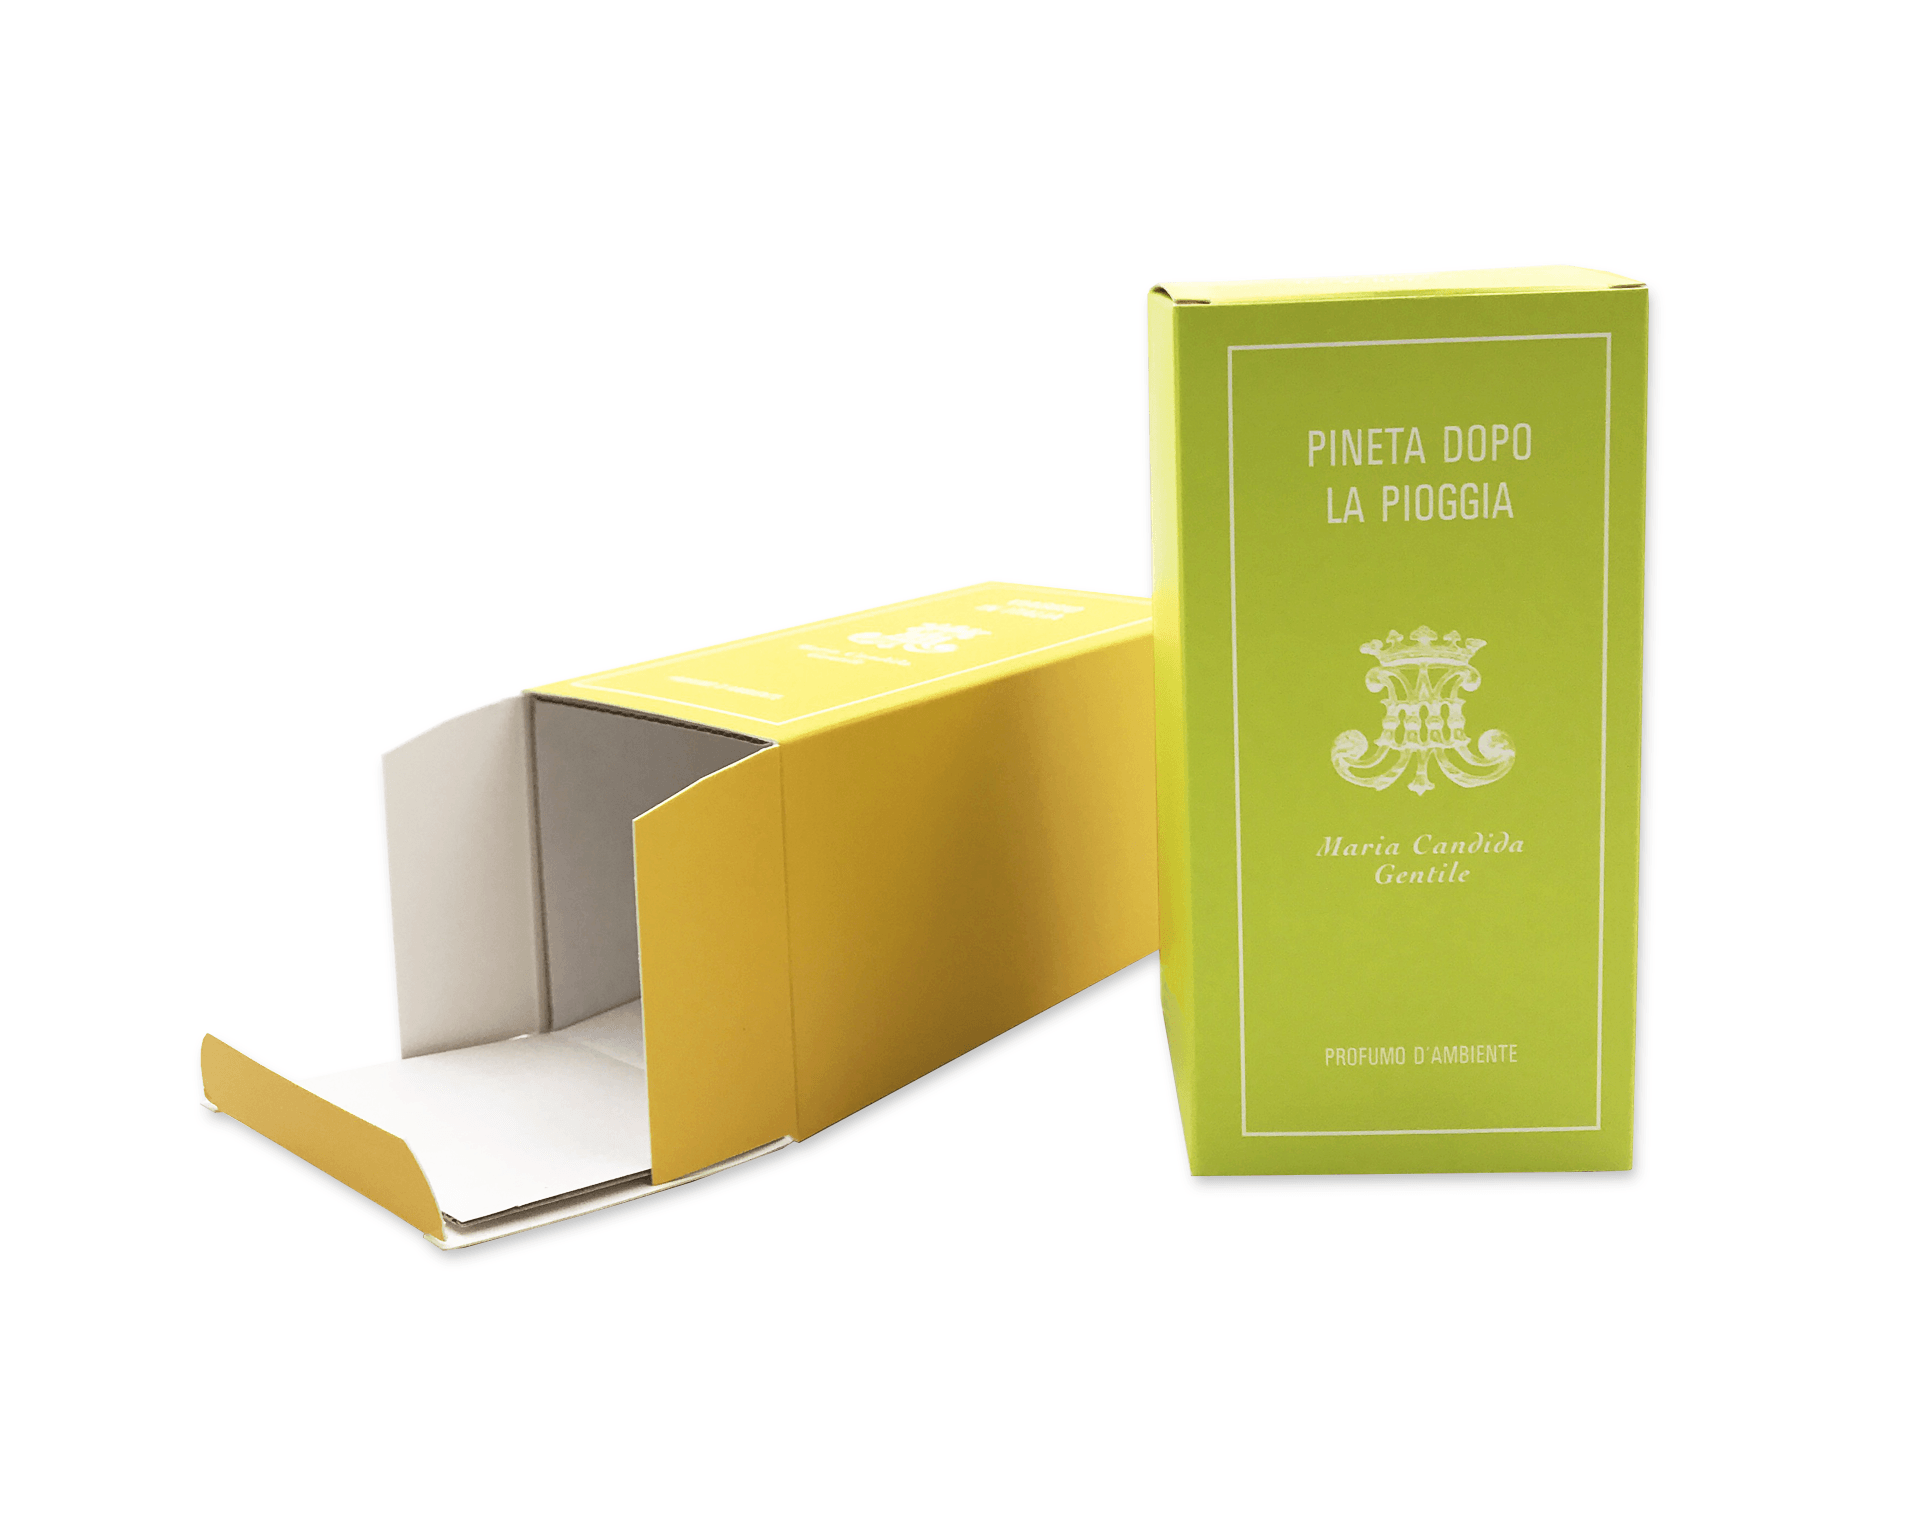 Scatola appiattibile con fondo automontante e coperchio rigido. Scegli materiali e colori particolari per rendere questa semplice scatola un oggetto unico.